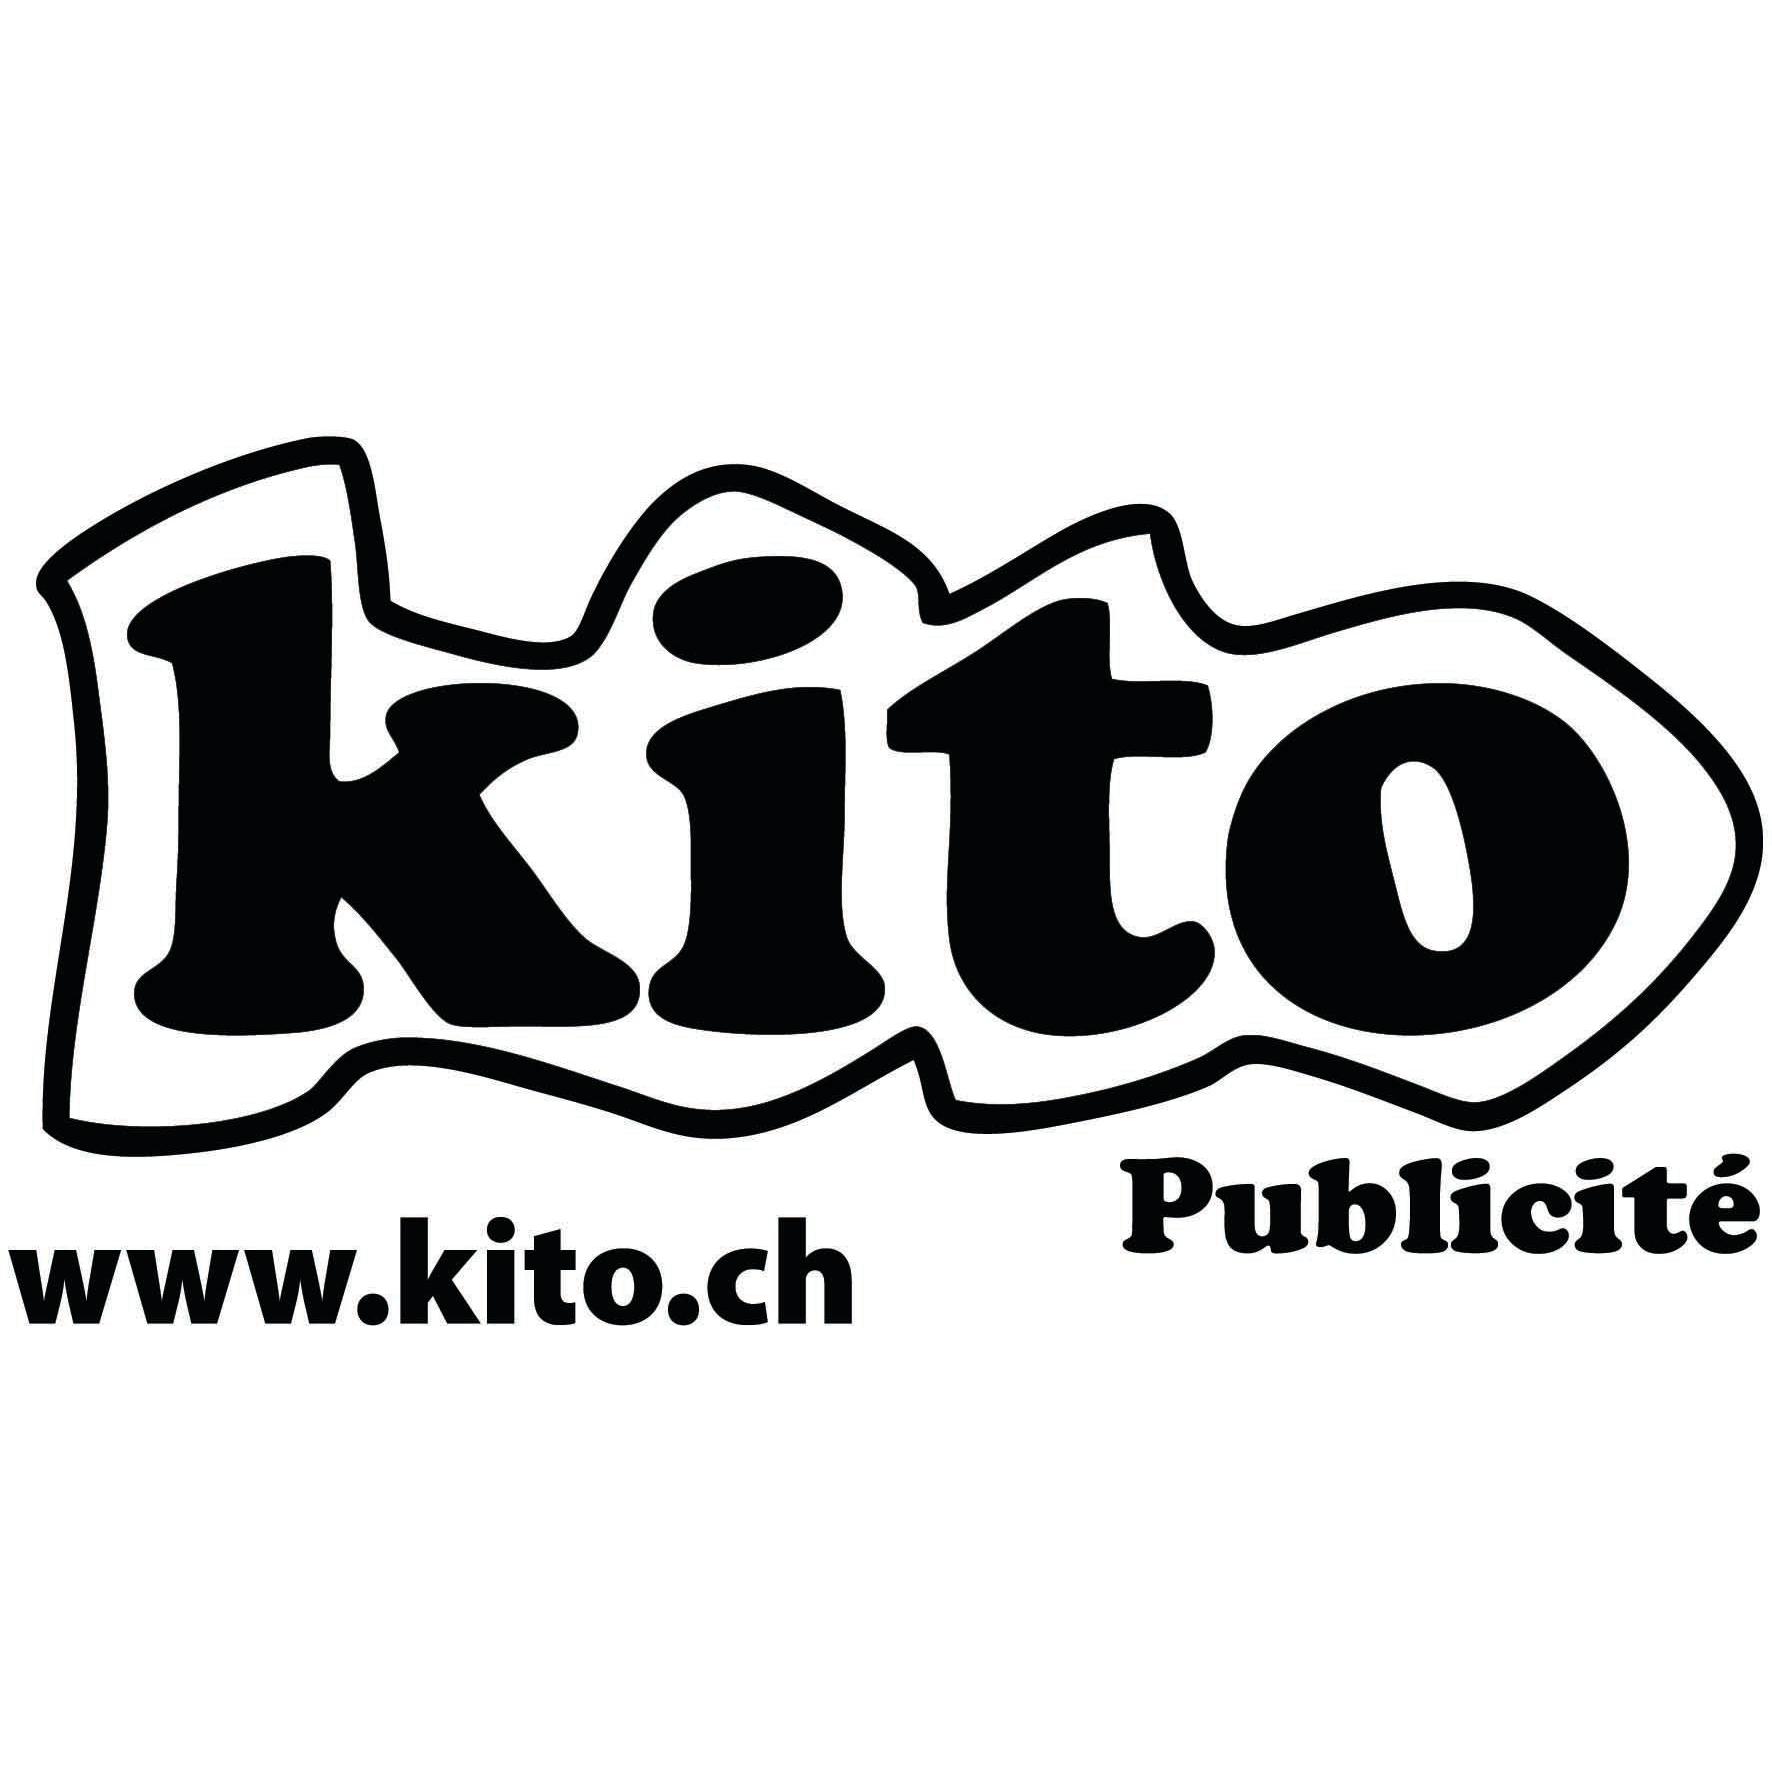 Kito publicité Logo